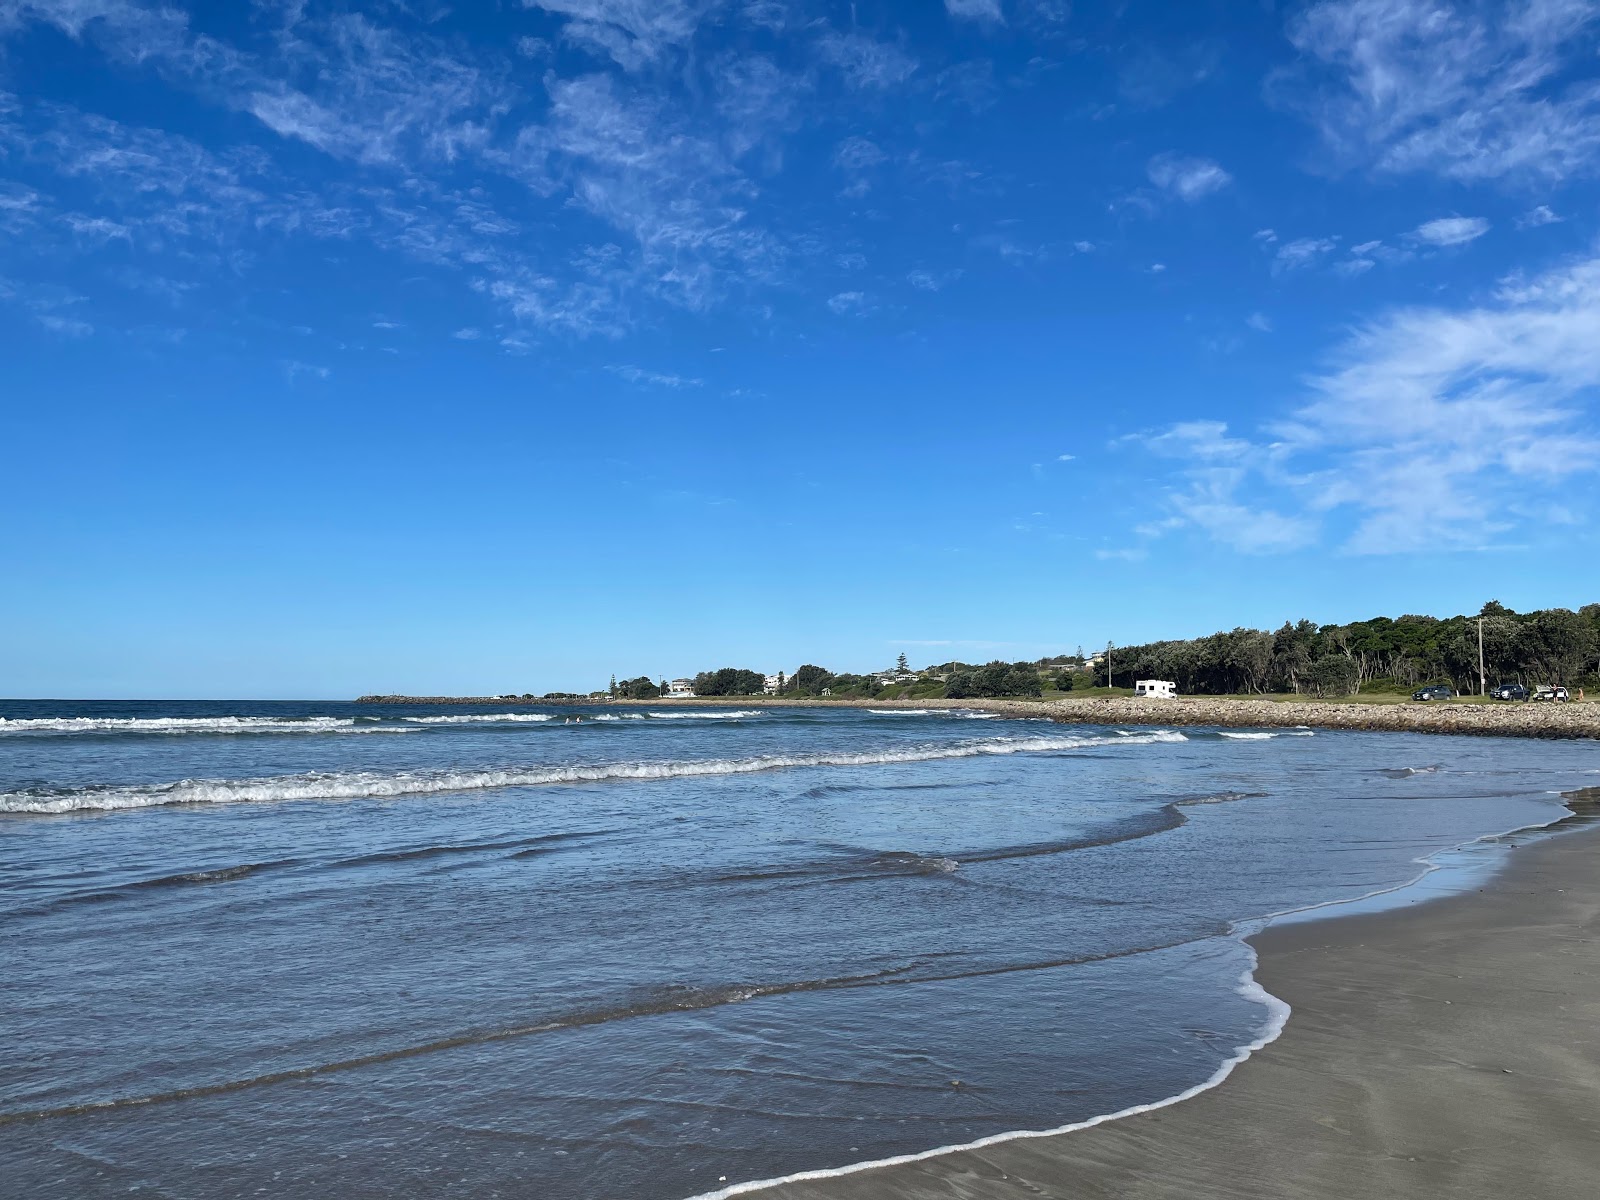 Fotografie cu Crowdy Bay Beach - locul popular printre cunoscătorii de relaxare